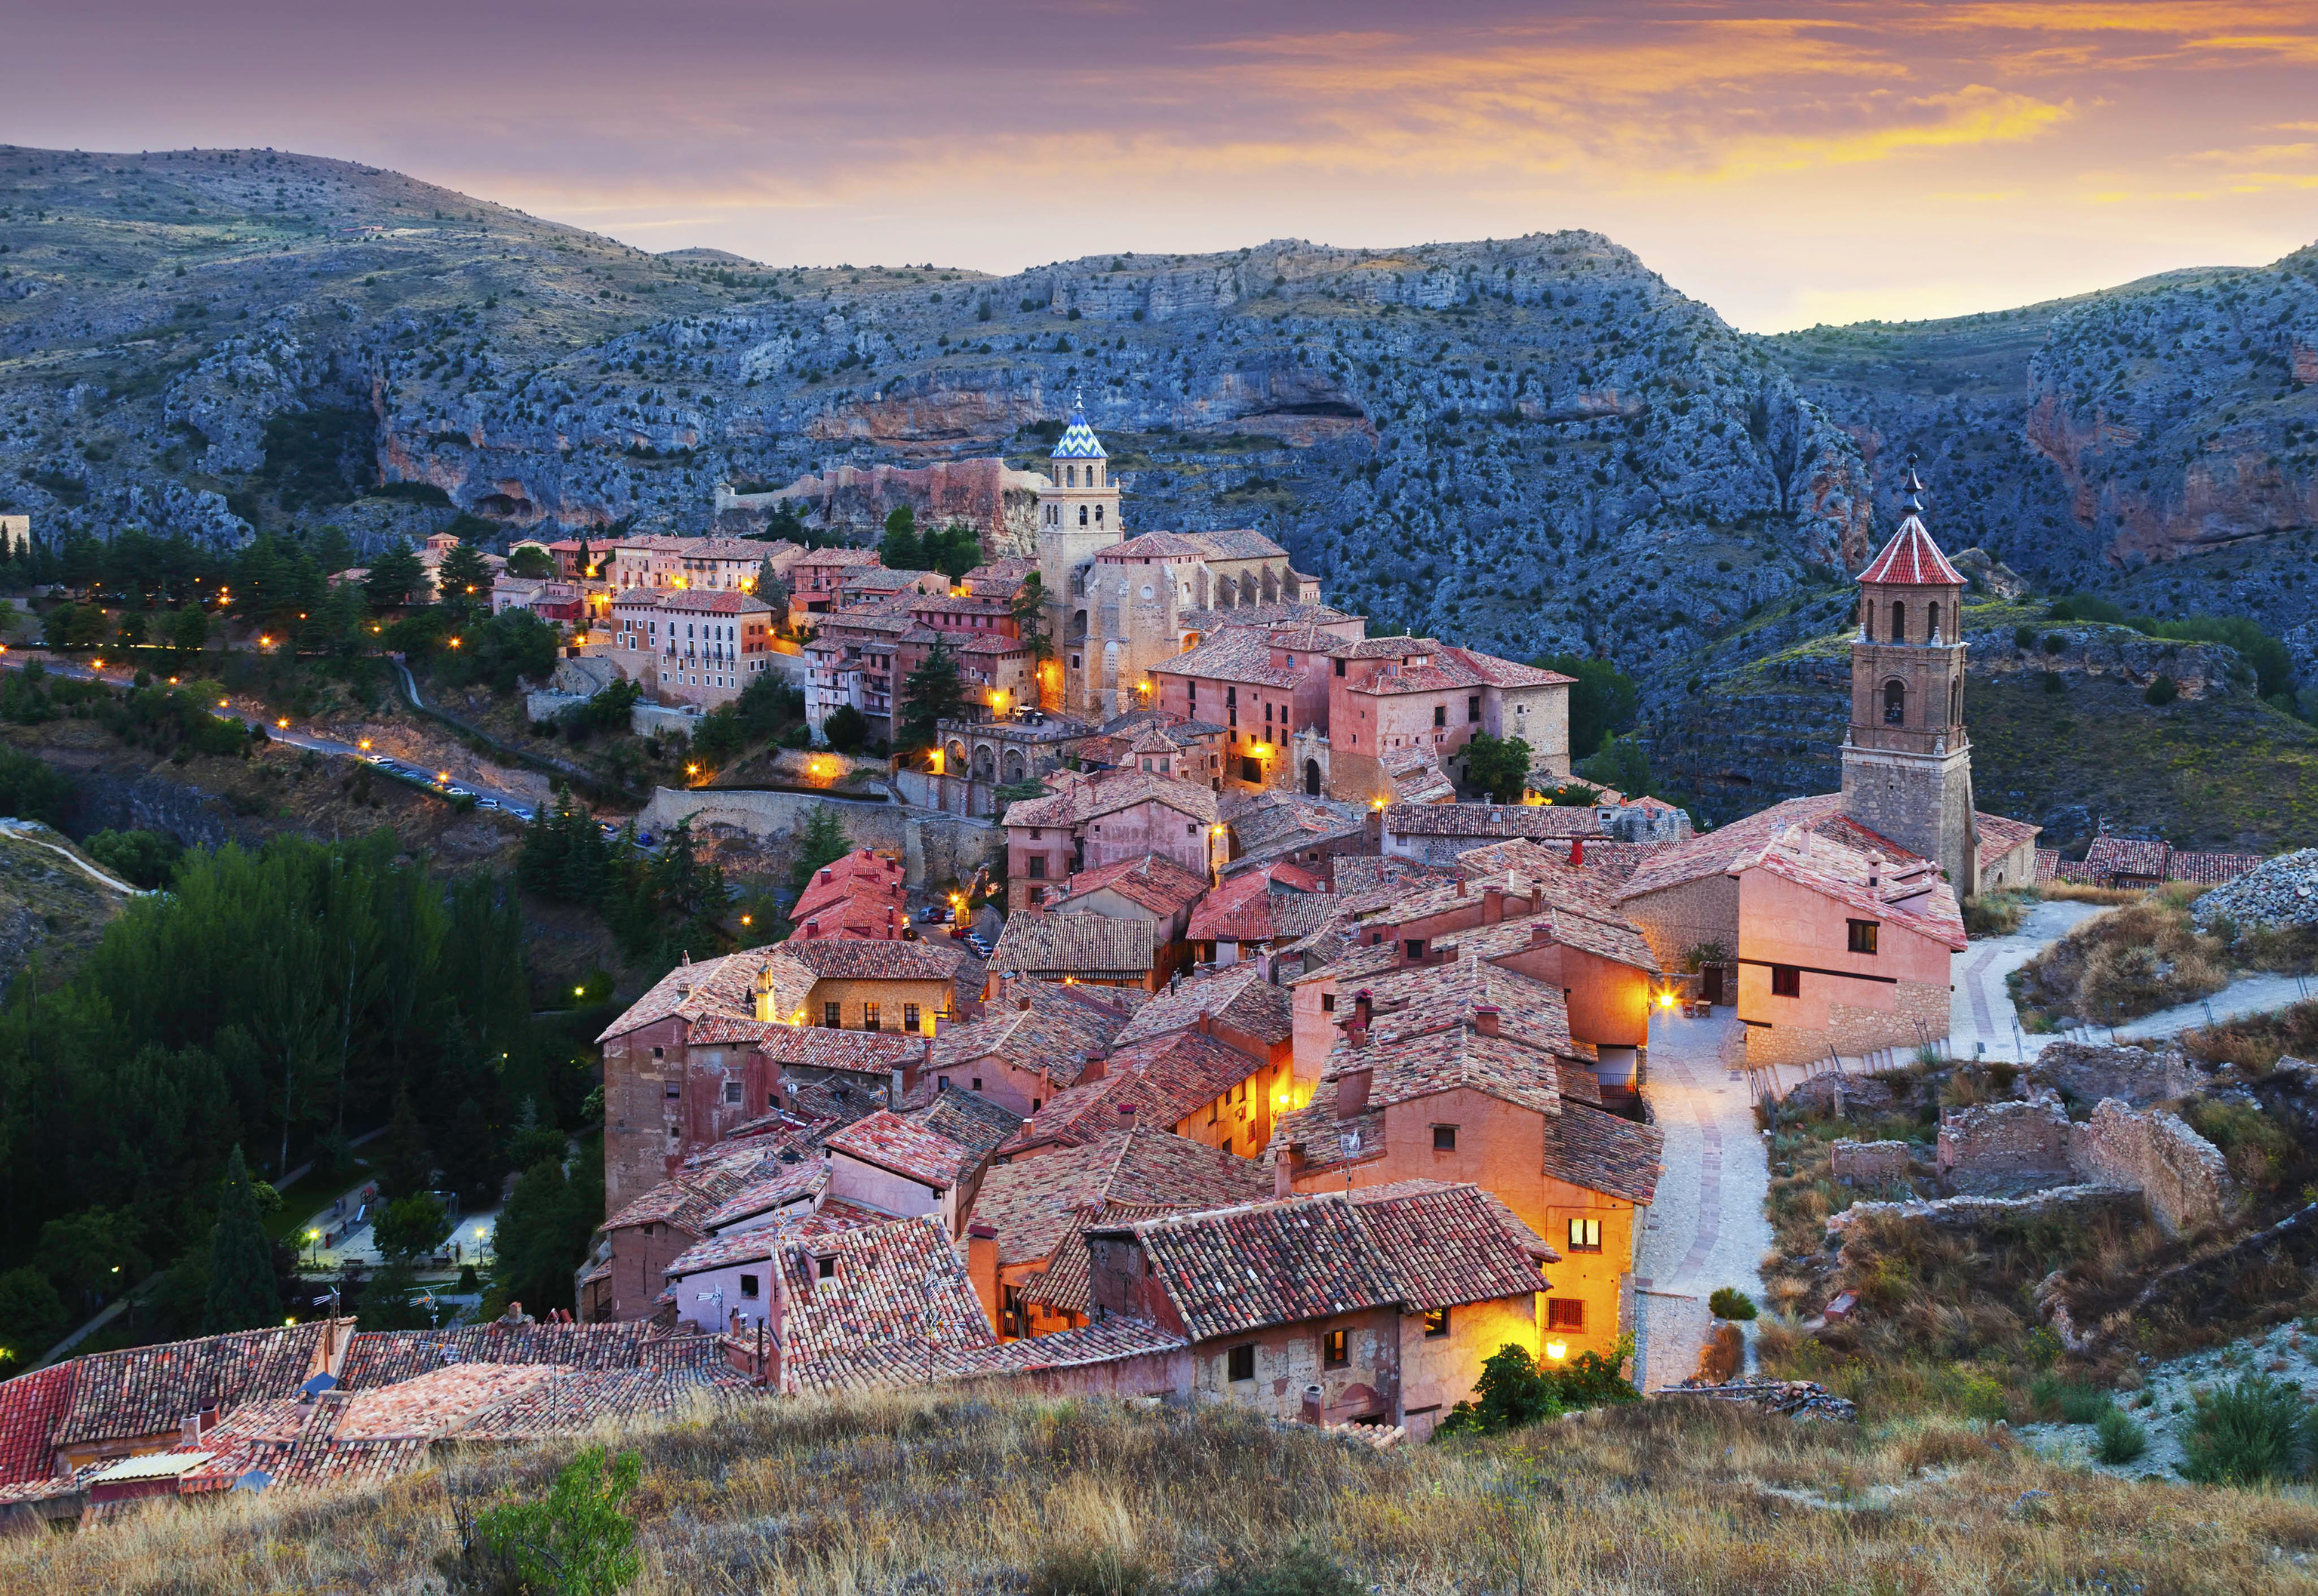 La localidad turolense de Albarracn.